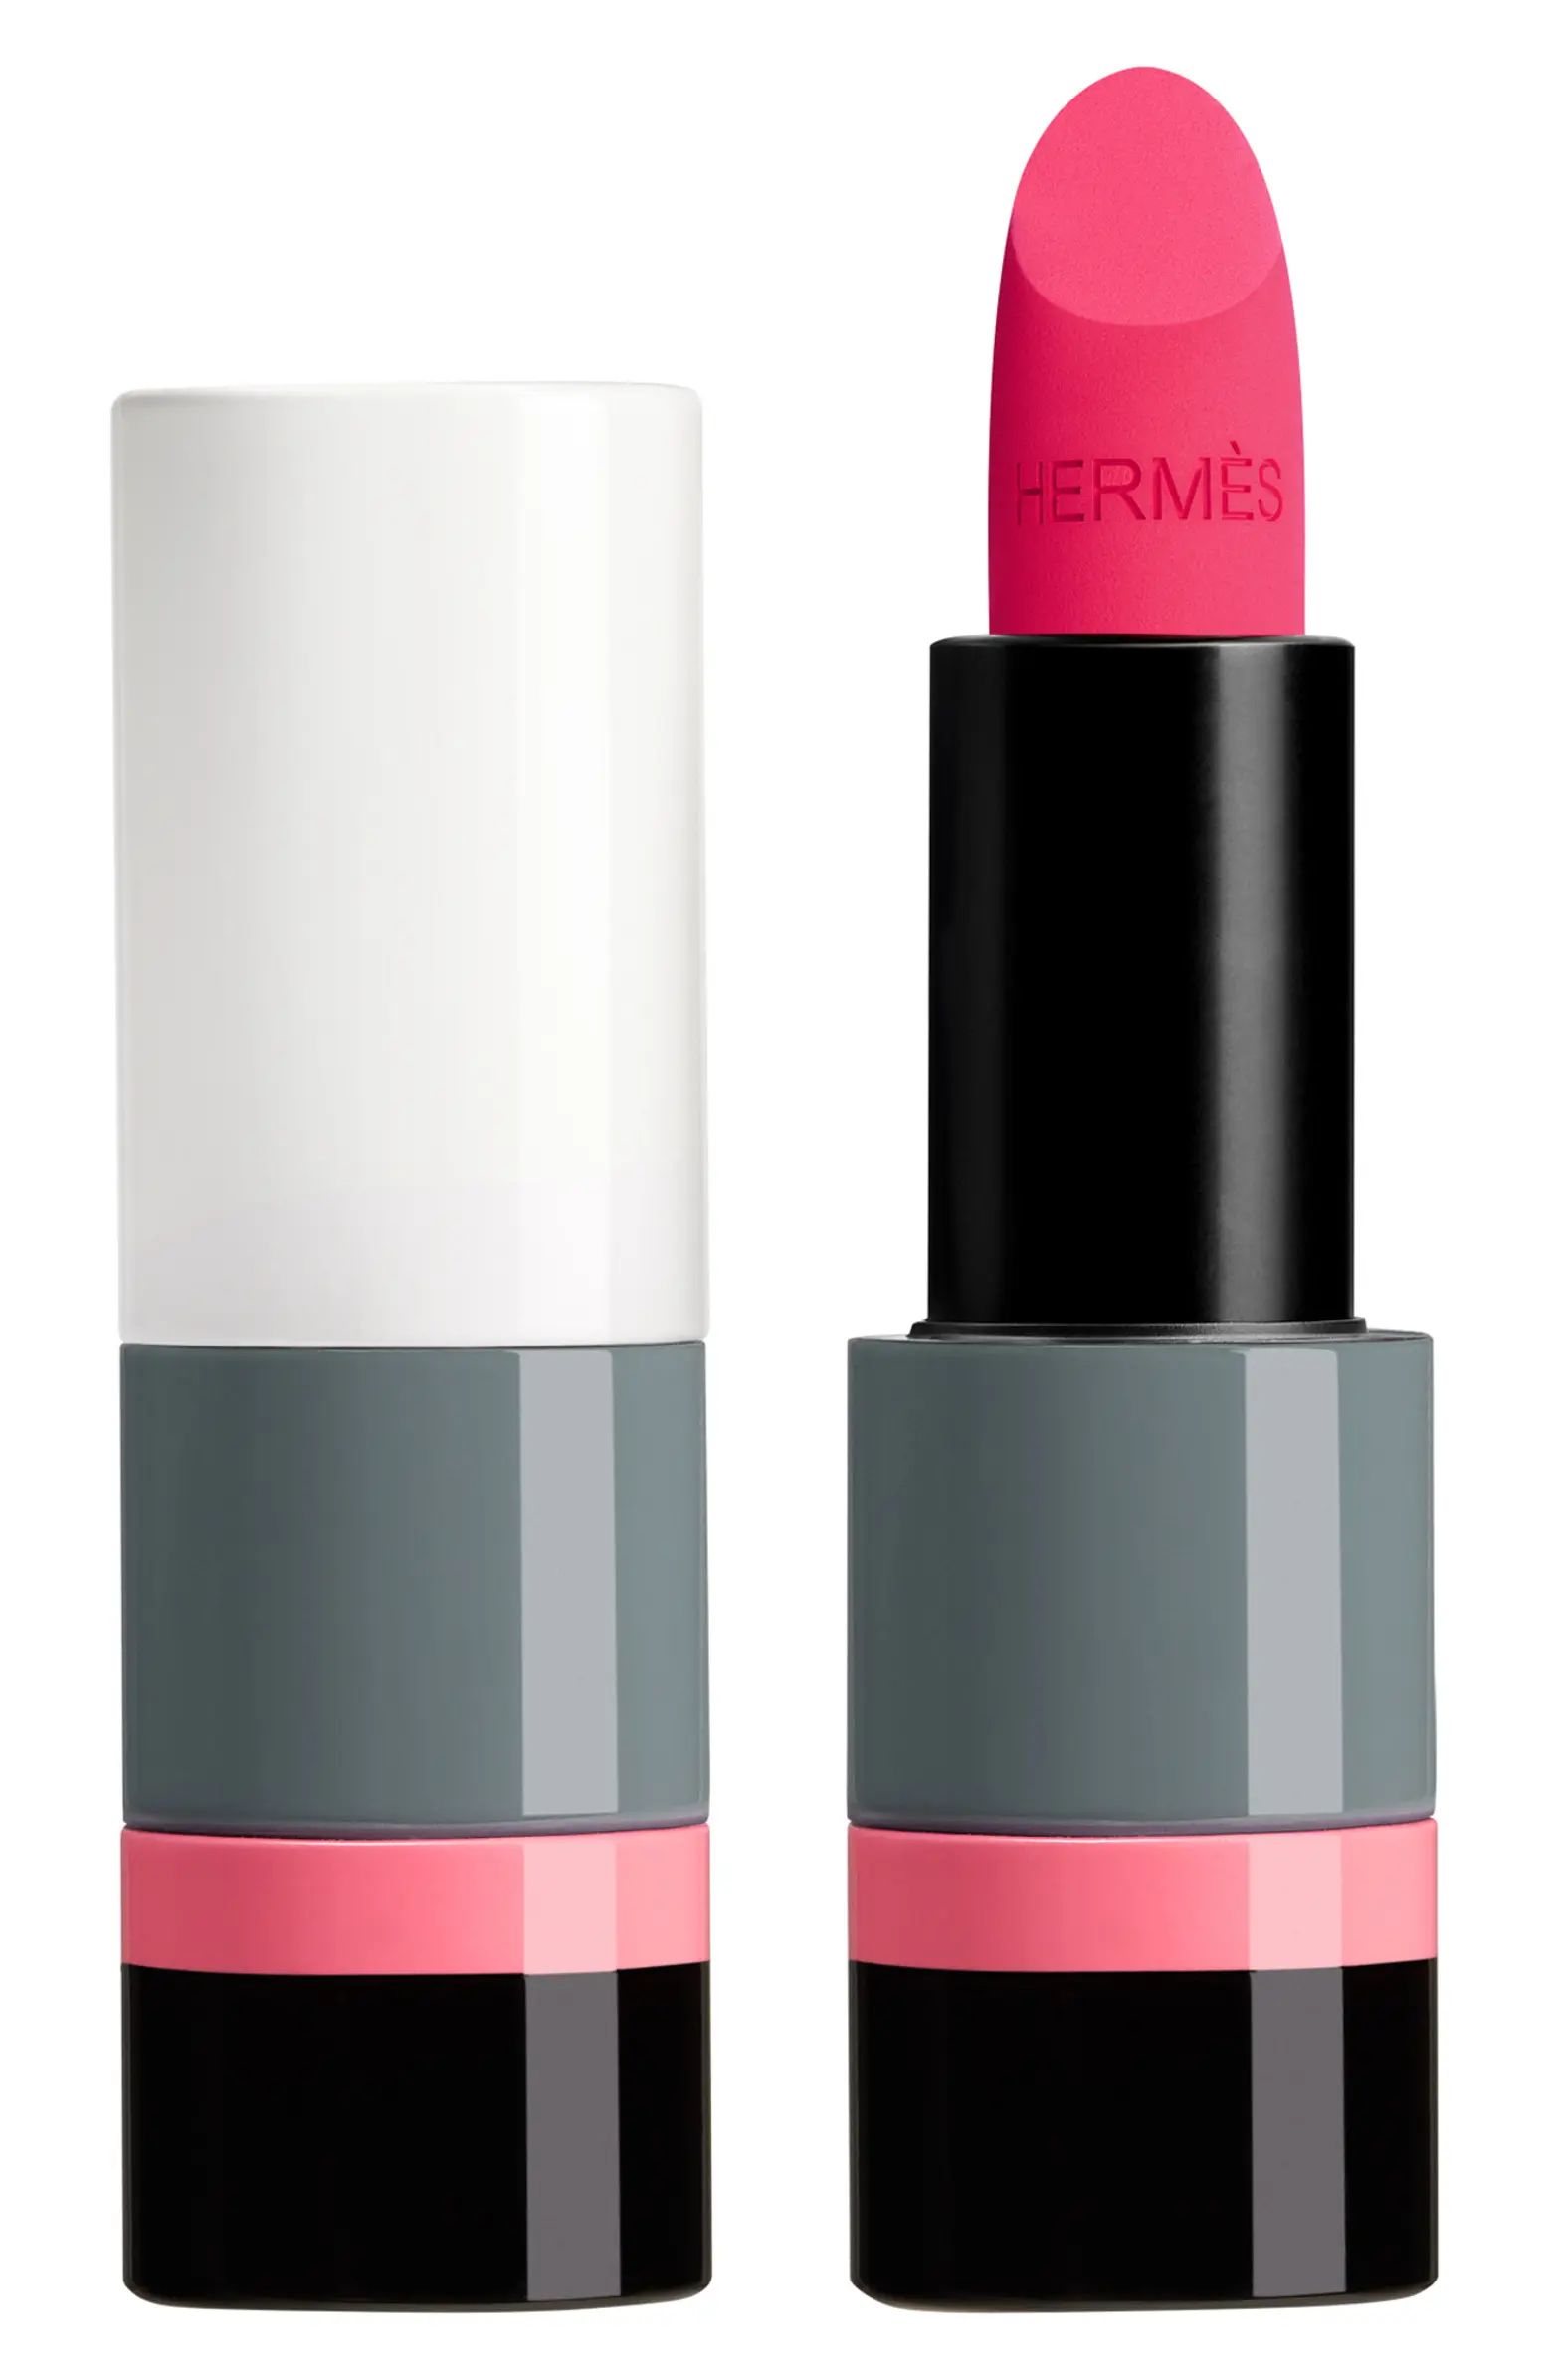 Rouge Hermès - Matte Lipstick in Rose Pop | Nordstrom